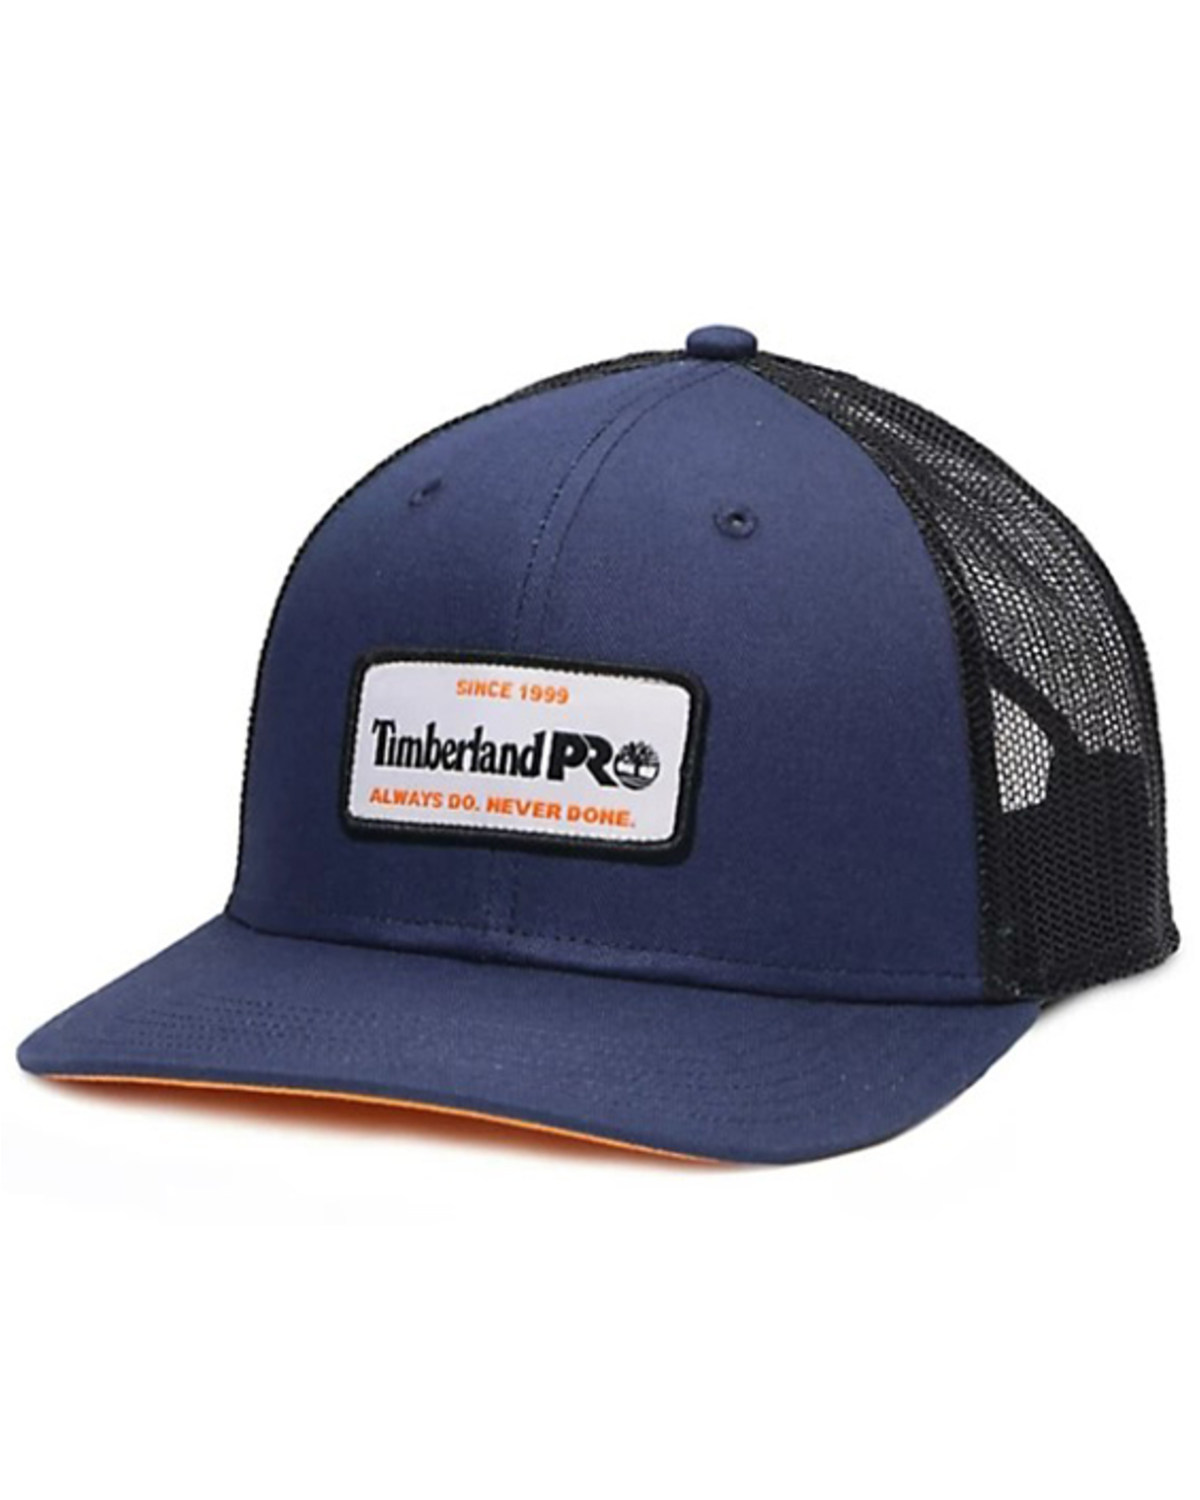 Timberland PRO Men's A.D.N.D. Logo Patch Mesh Back Trucker Cap